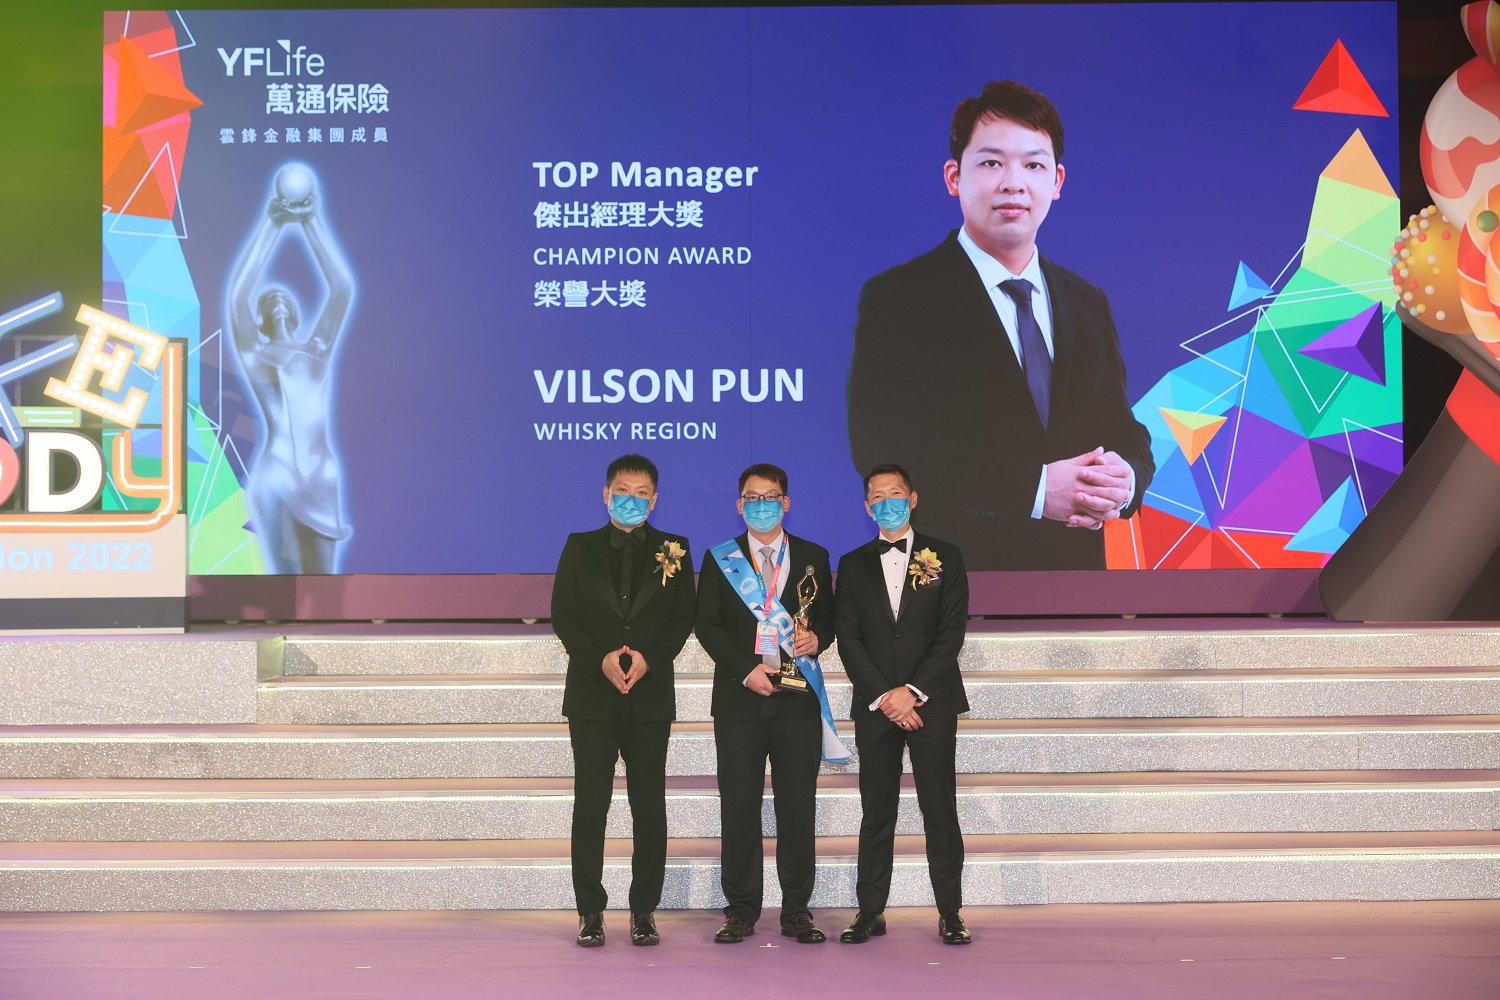 Mr. Vilson Pun, Champion Award winner of Top Manager.